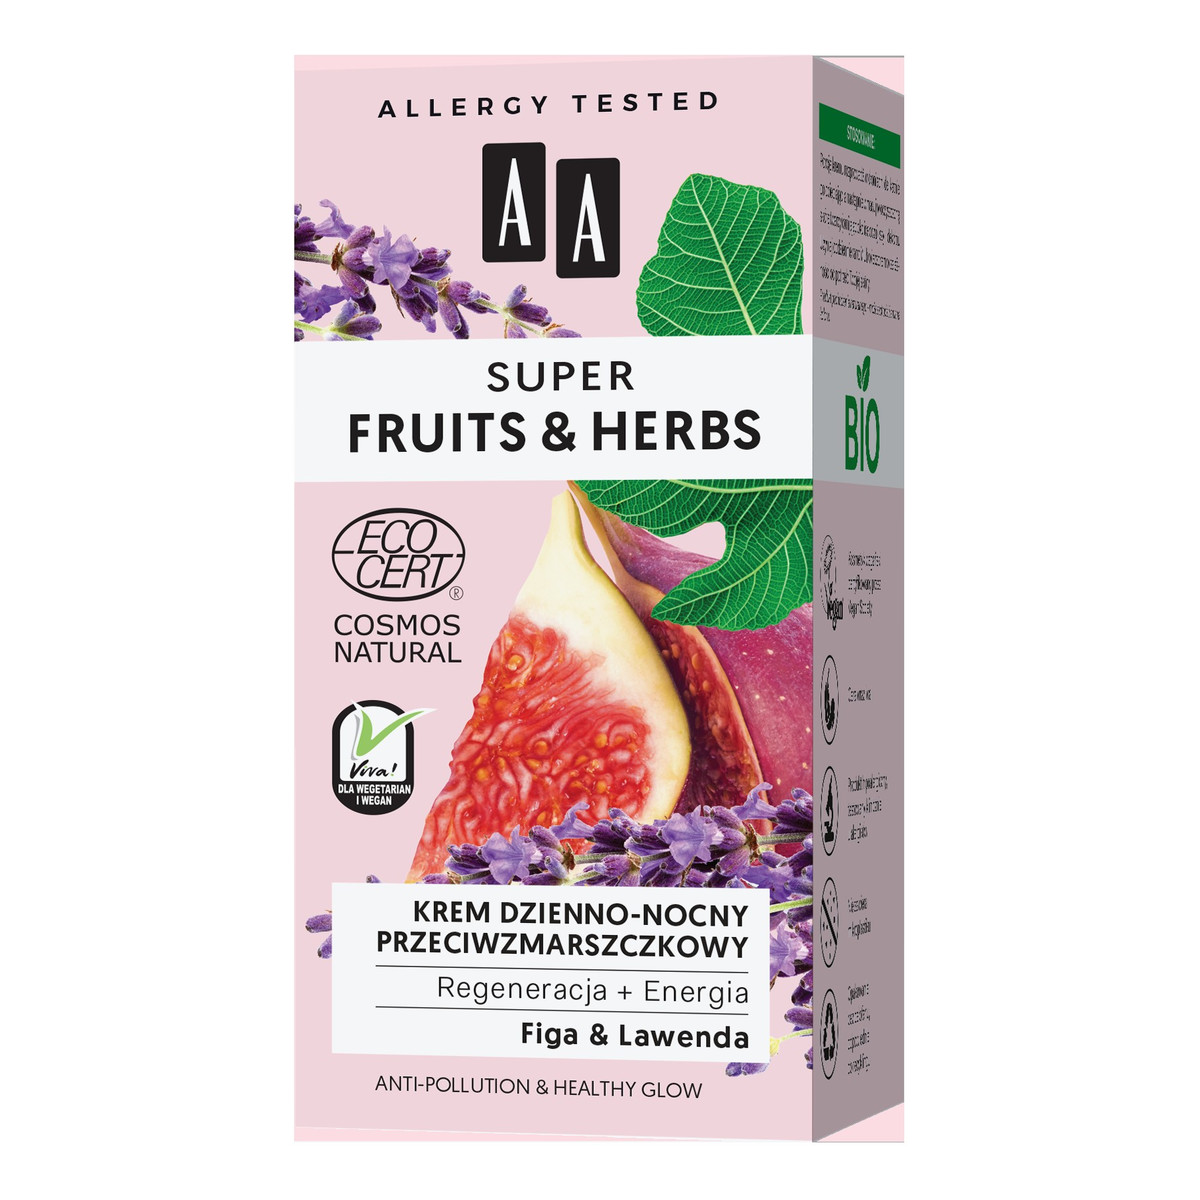 AA Super Fruits & Herbs Krem dzienno-nocny przeciwzmarszczkowy Figa i Lawenda 50ml